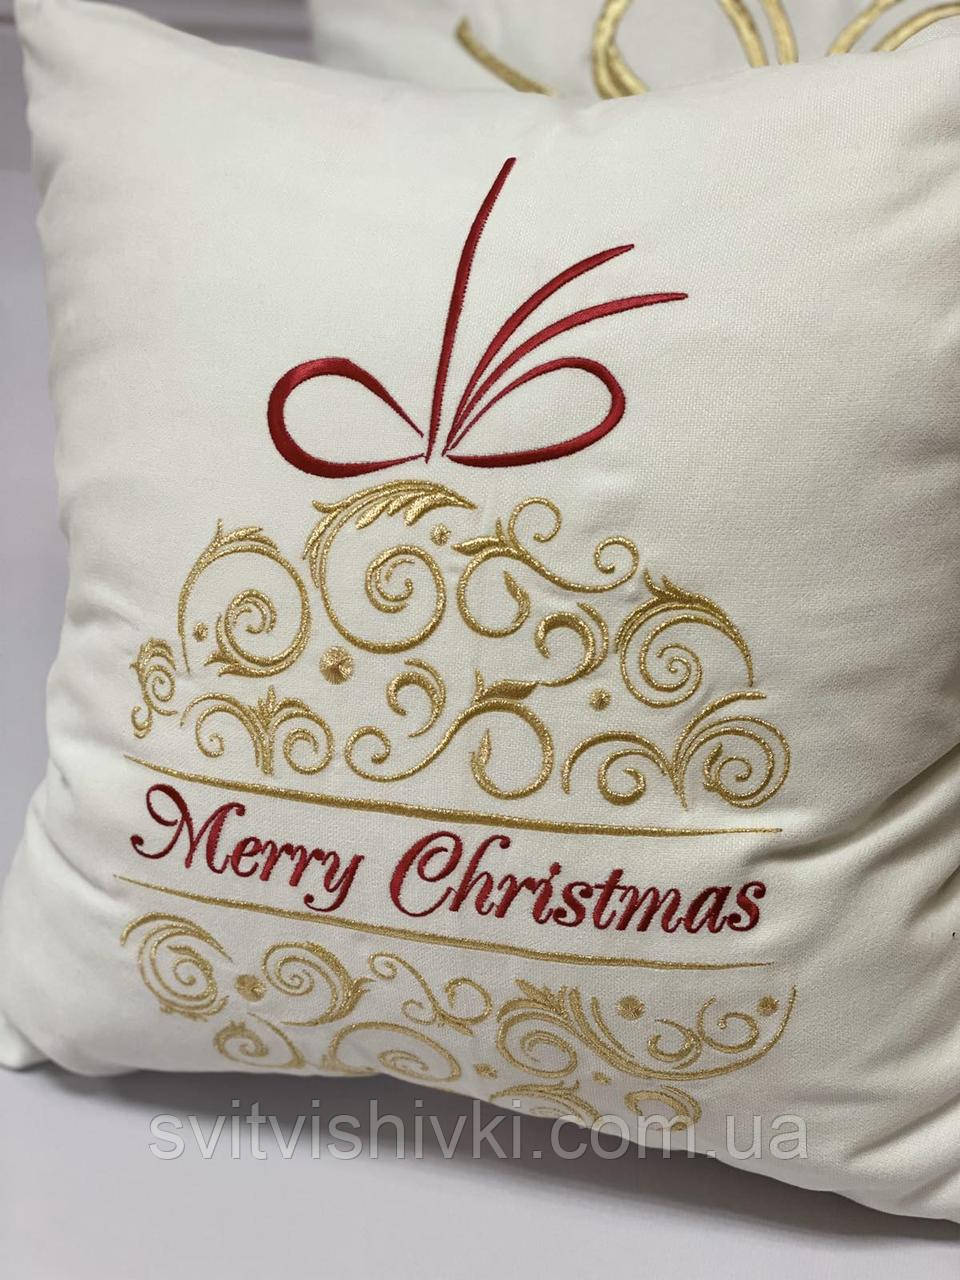 Новогодняя подушка с вышивкой "Merry Christmas"